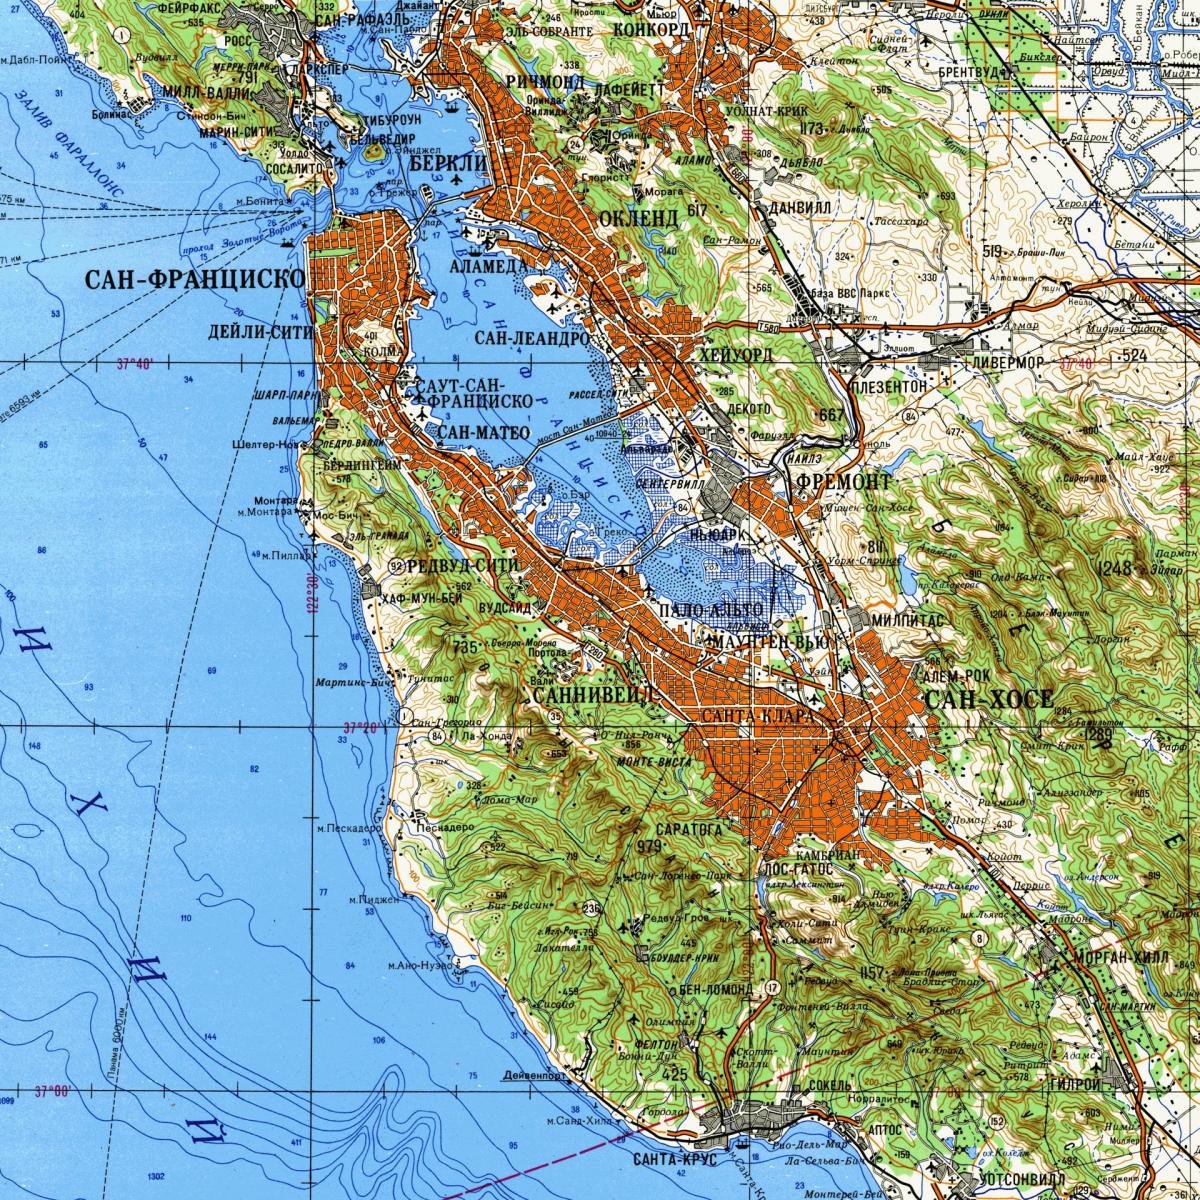 Vùng vịnh San Francisco bản đồ địa hình